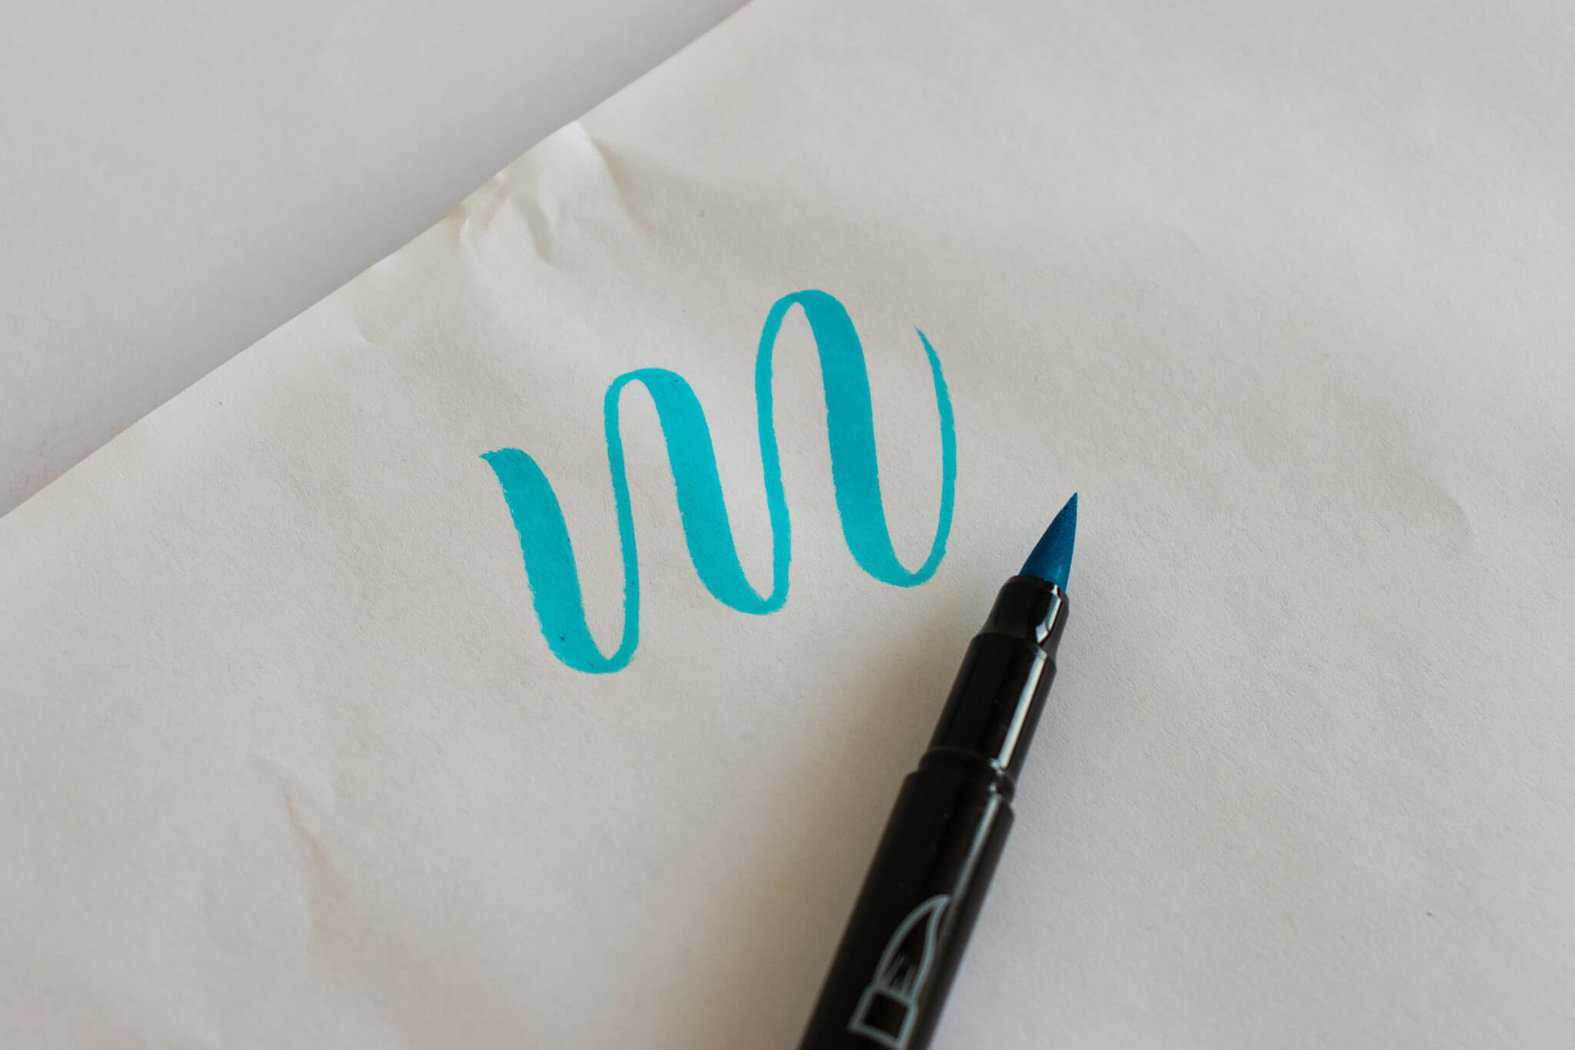 ink flow sample - Lyra brush pen